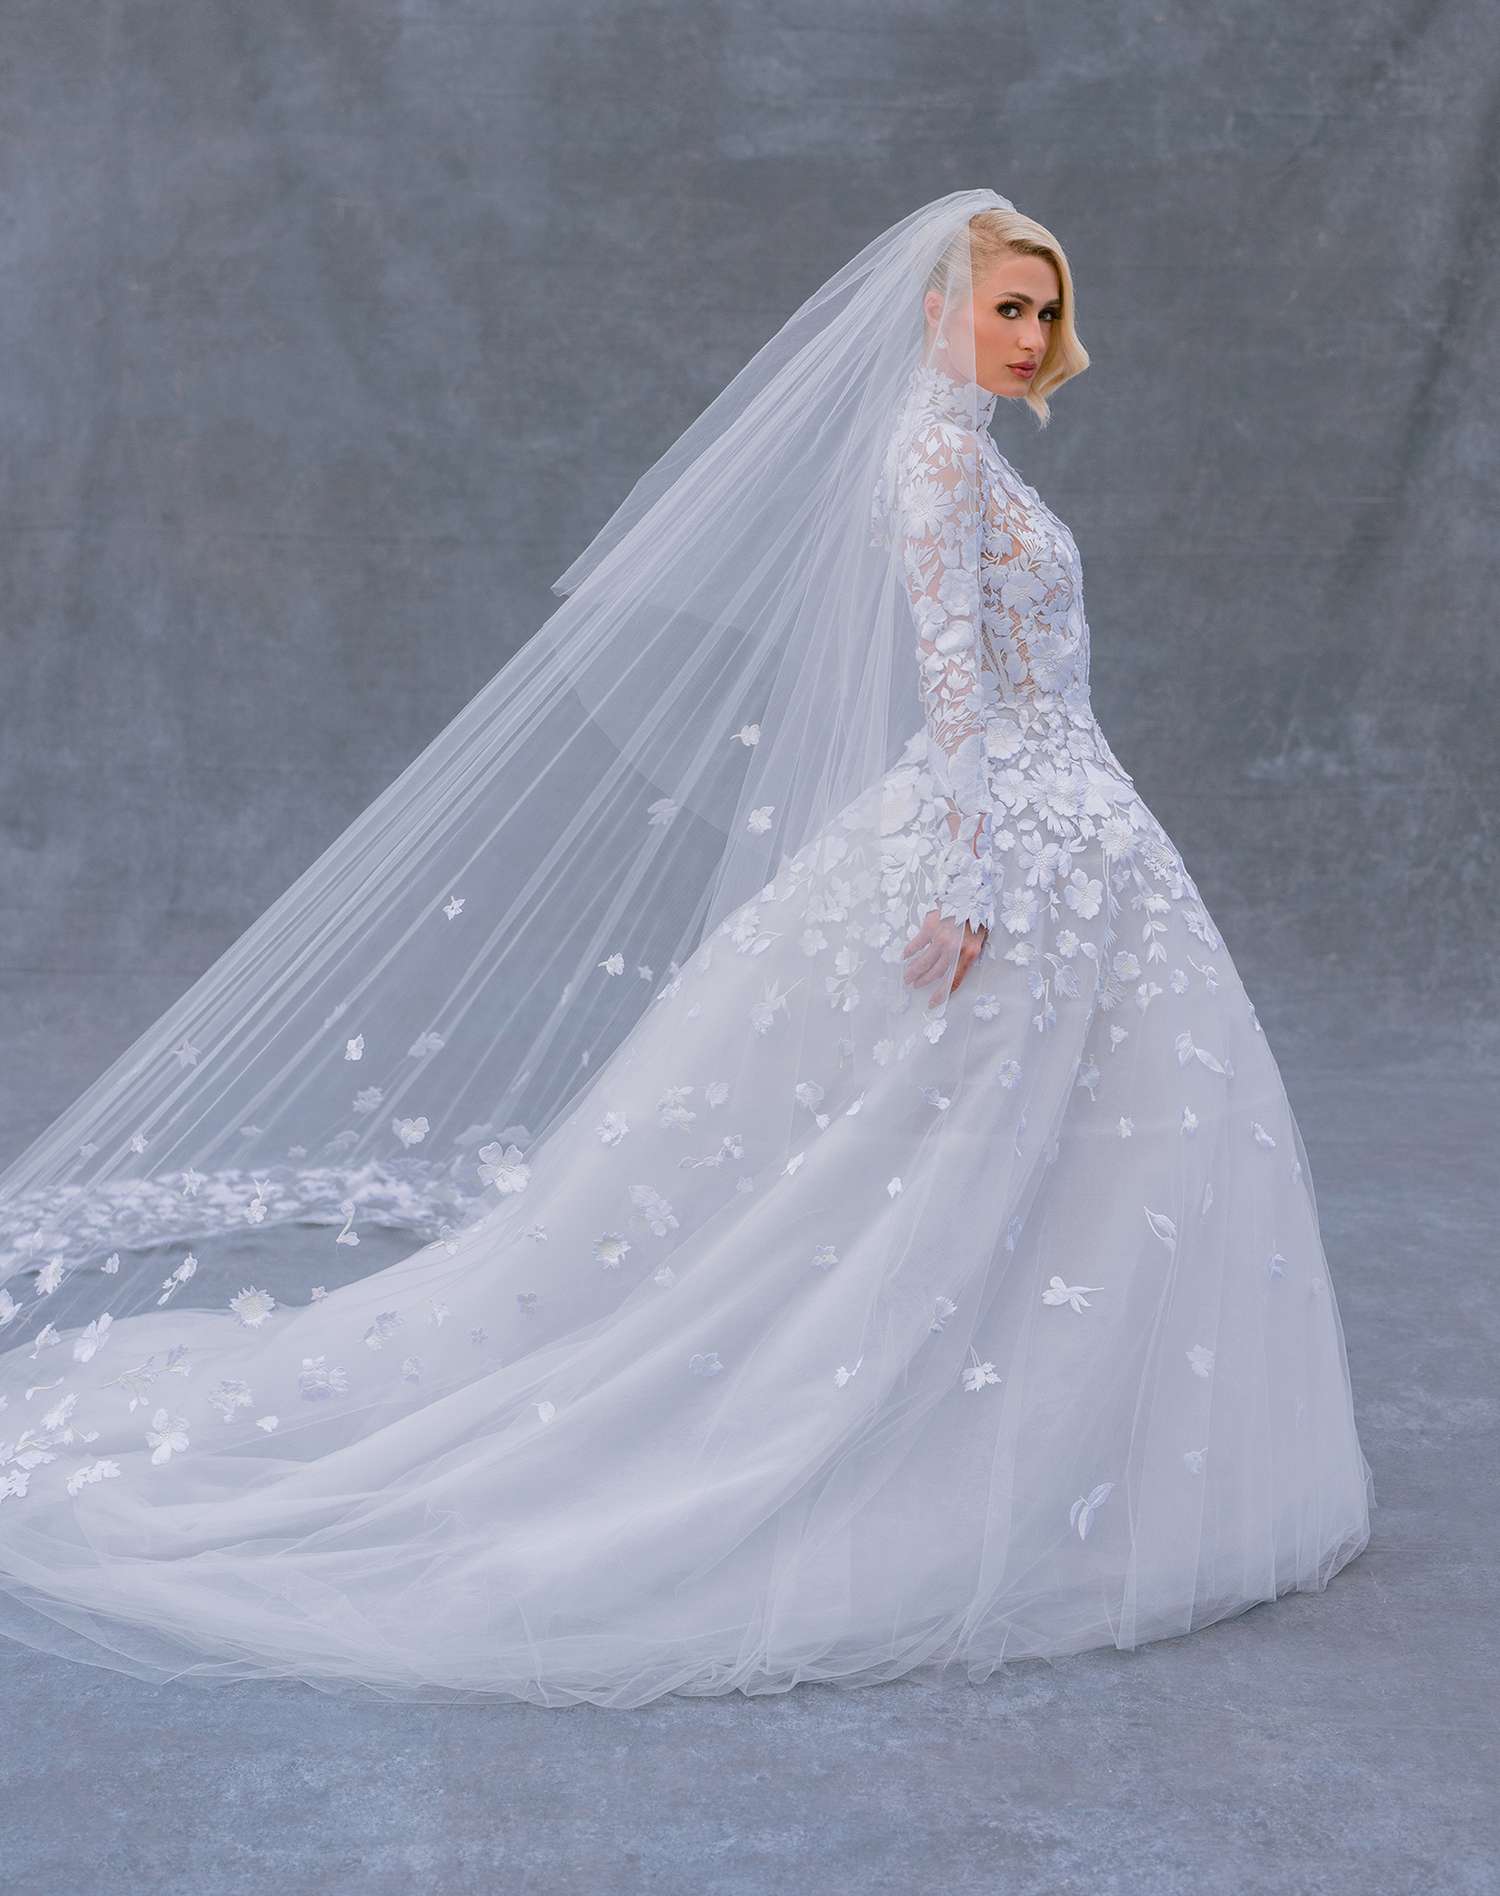 Todos los detalles sobre el vestido de novia de Paris Hilton (y los cambios de atuendo) para las nupcias con Carter Reum